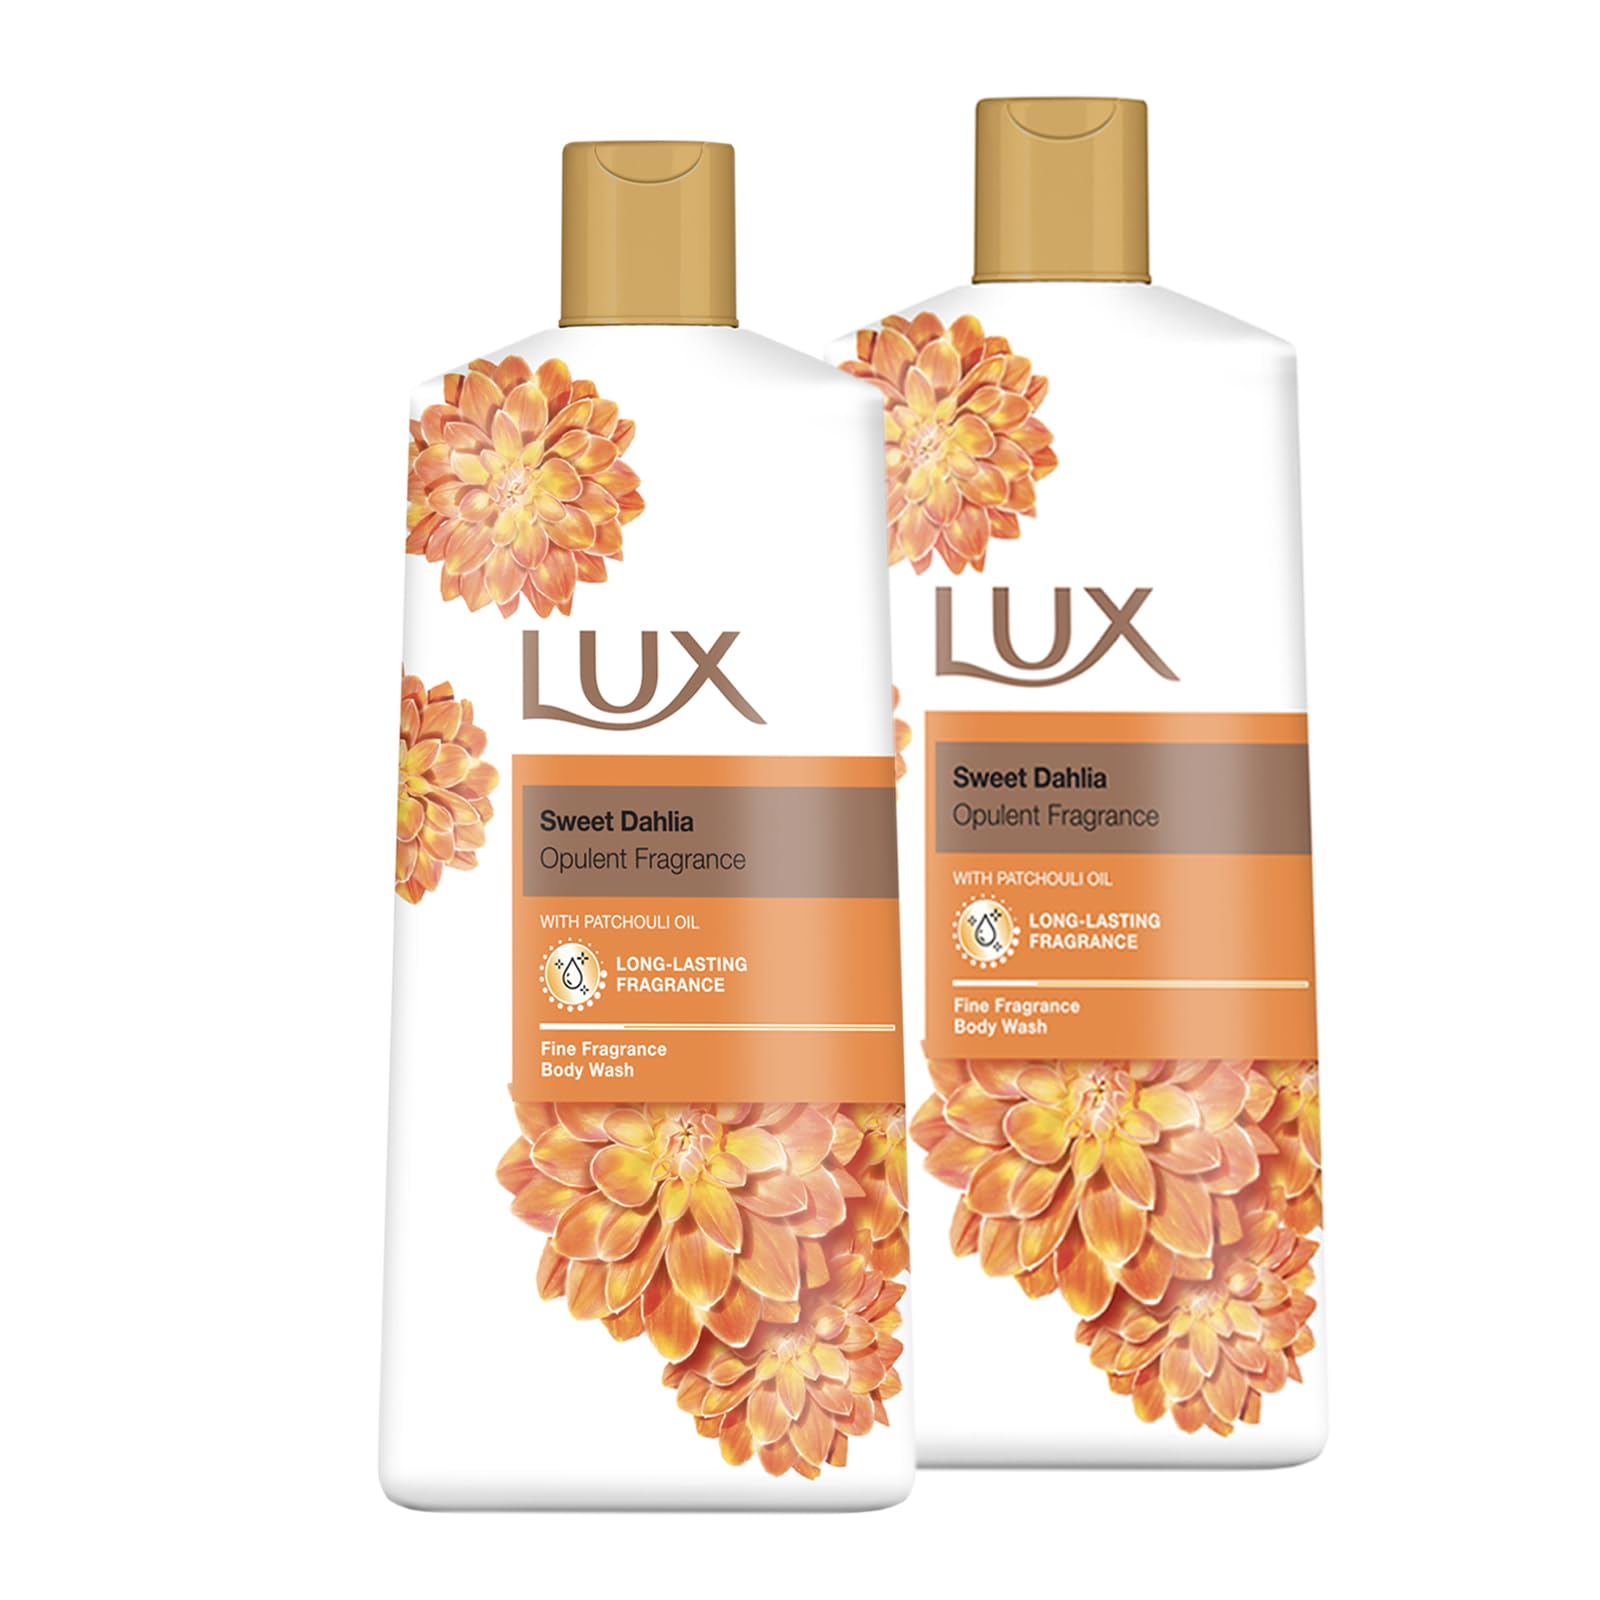 LUX Sweet Dahlia with Patchouli Oil Body Wash - Sanftes & beruhigendes Frauen und Männer Duschgel, pflegende, aromatische Körperpflege, Bade- und Duschschaum, duschbad Essential - 2er Pack, 600 ml